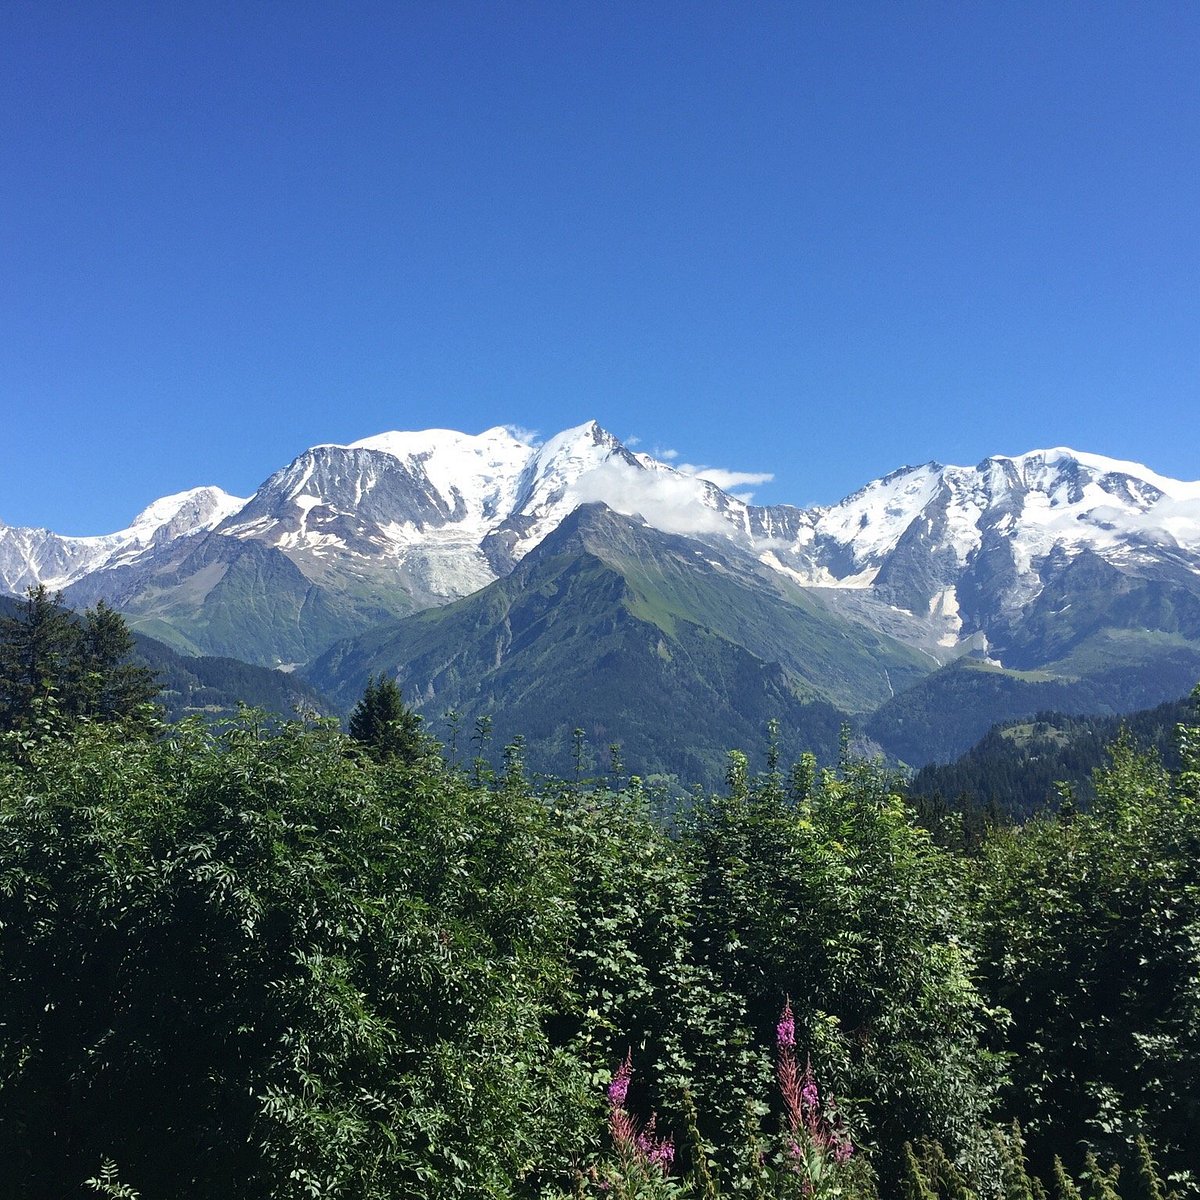 Saint-Gervais Mont-Blanc, France 